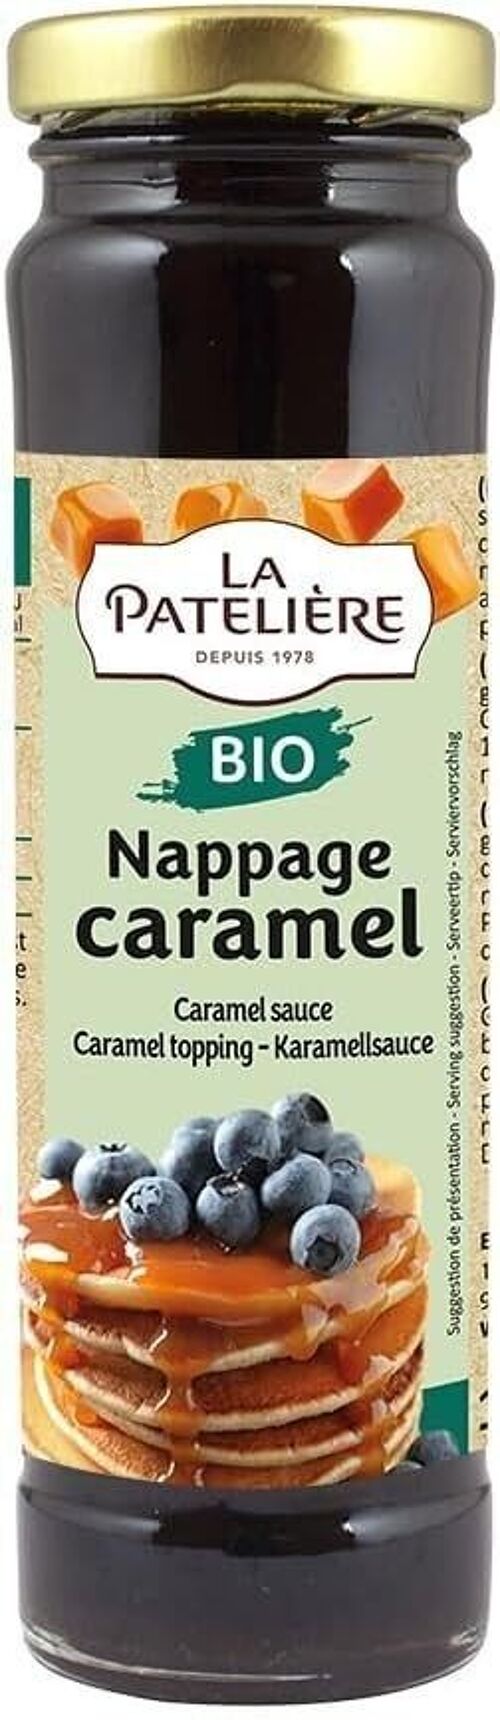 Nappage Caramel